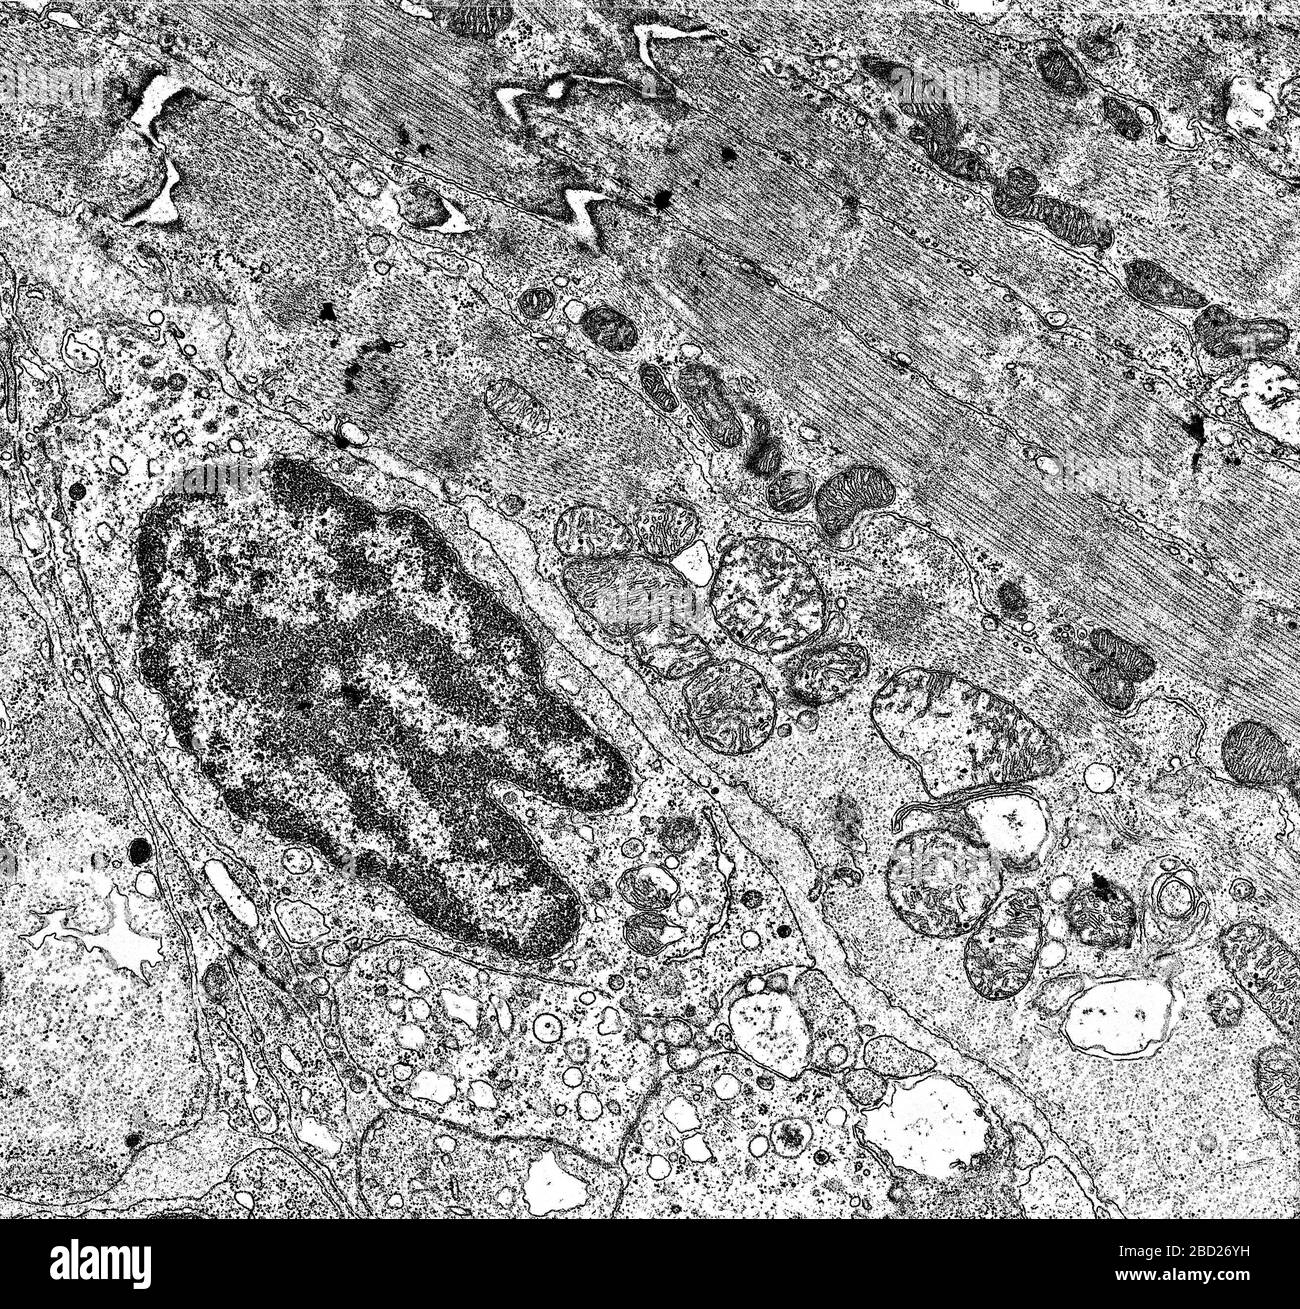 Núcleo celular y organelos bajo el microscopio electrónico 50,000x  Fotografía de stock - Alamy